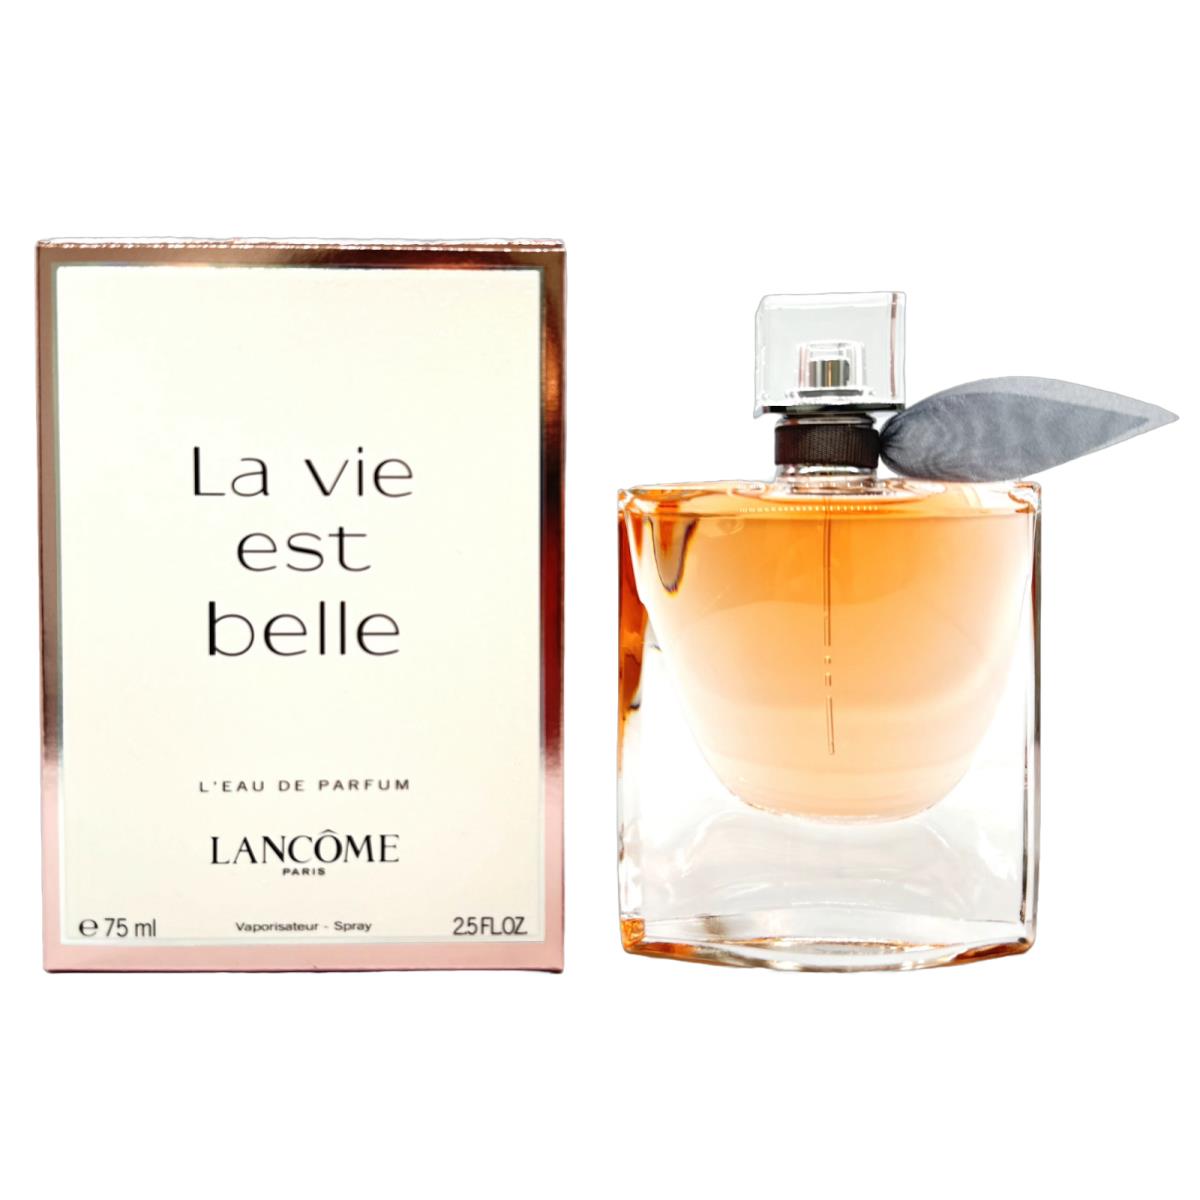 Lancome La Vie Est Belle For Women 2.5oz Eau de Parfum Spray